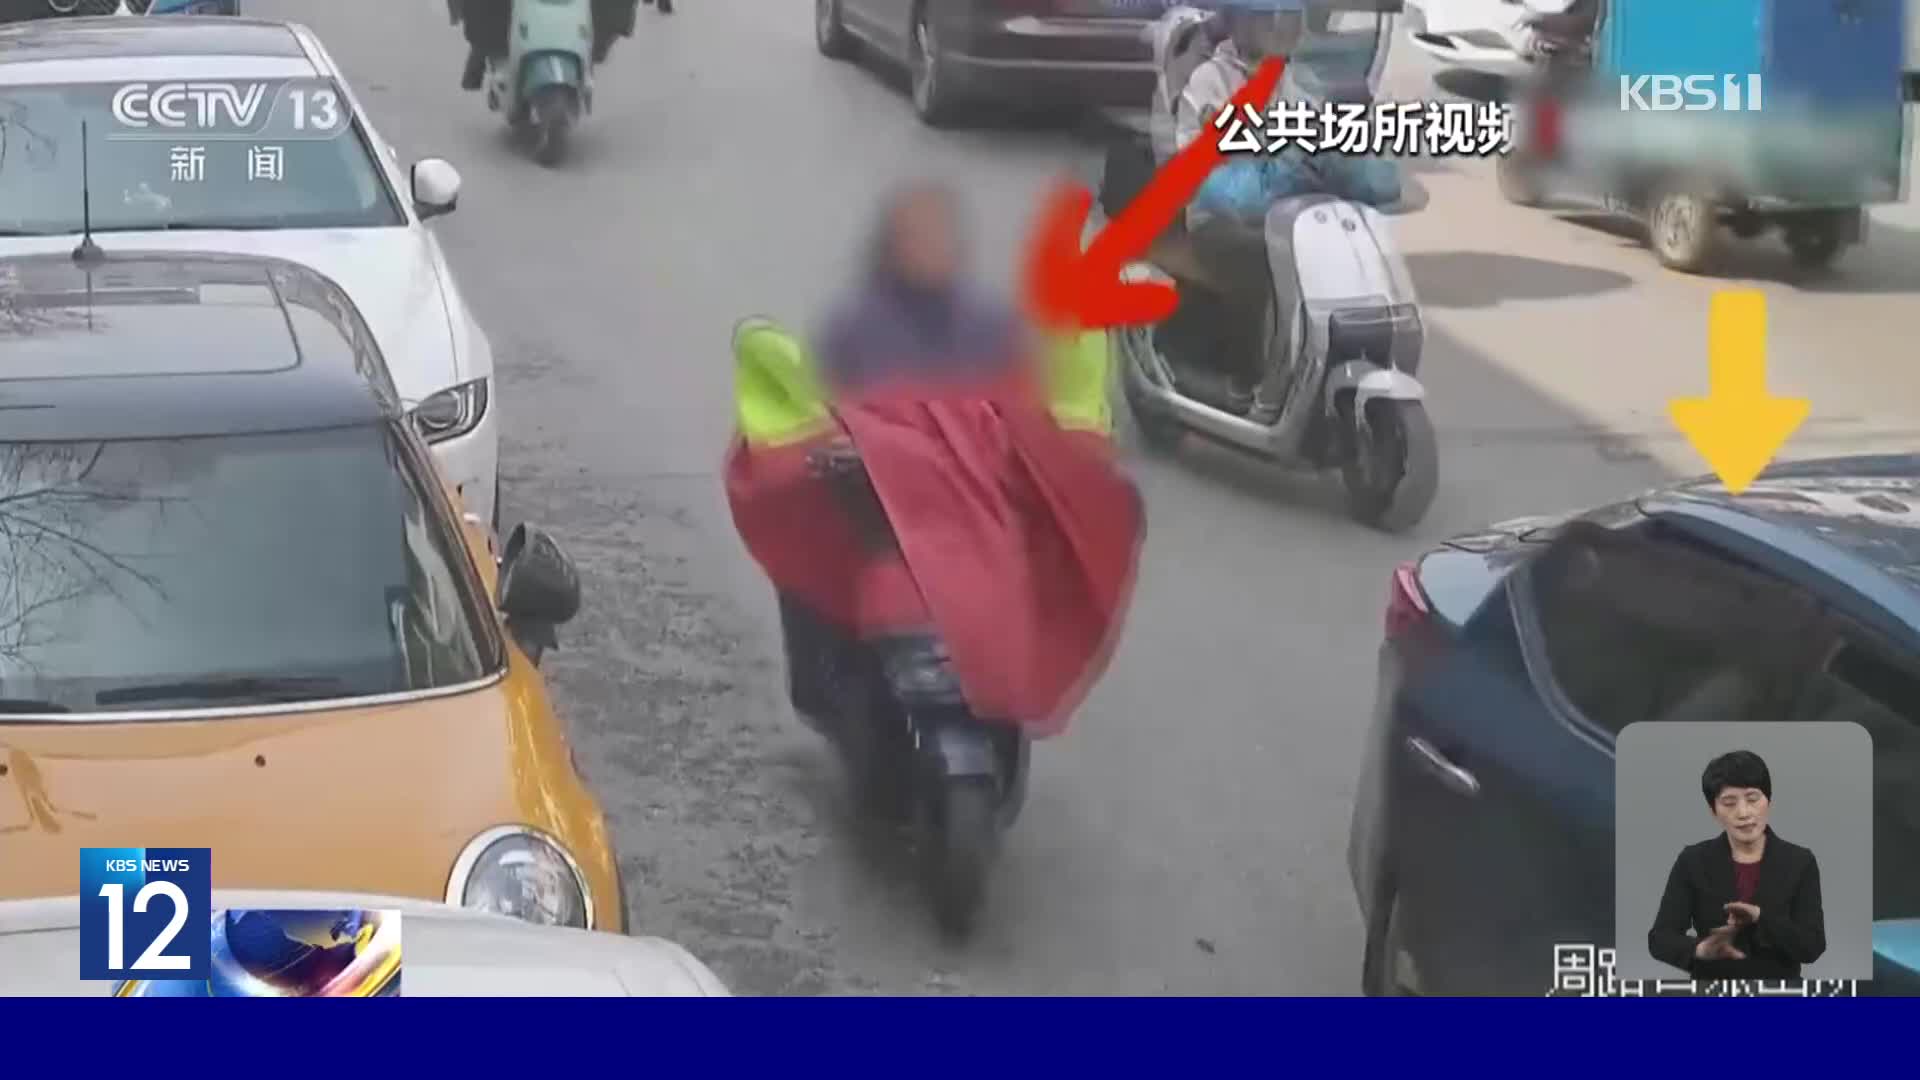 중국, 차 문 열때 오토바이와 추돌사고 잇따라